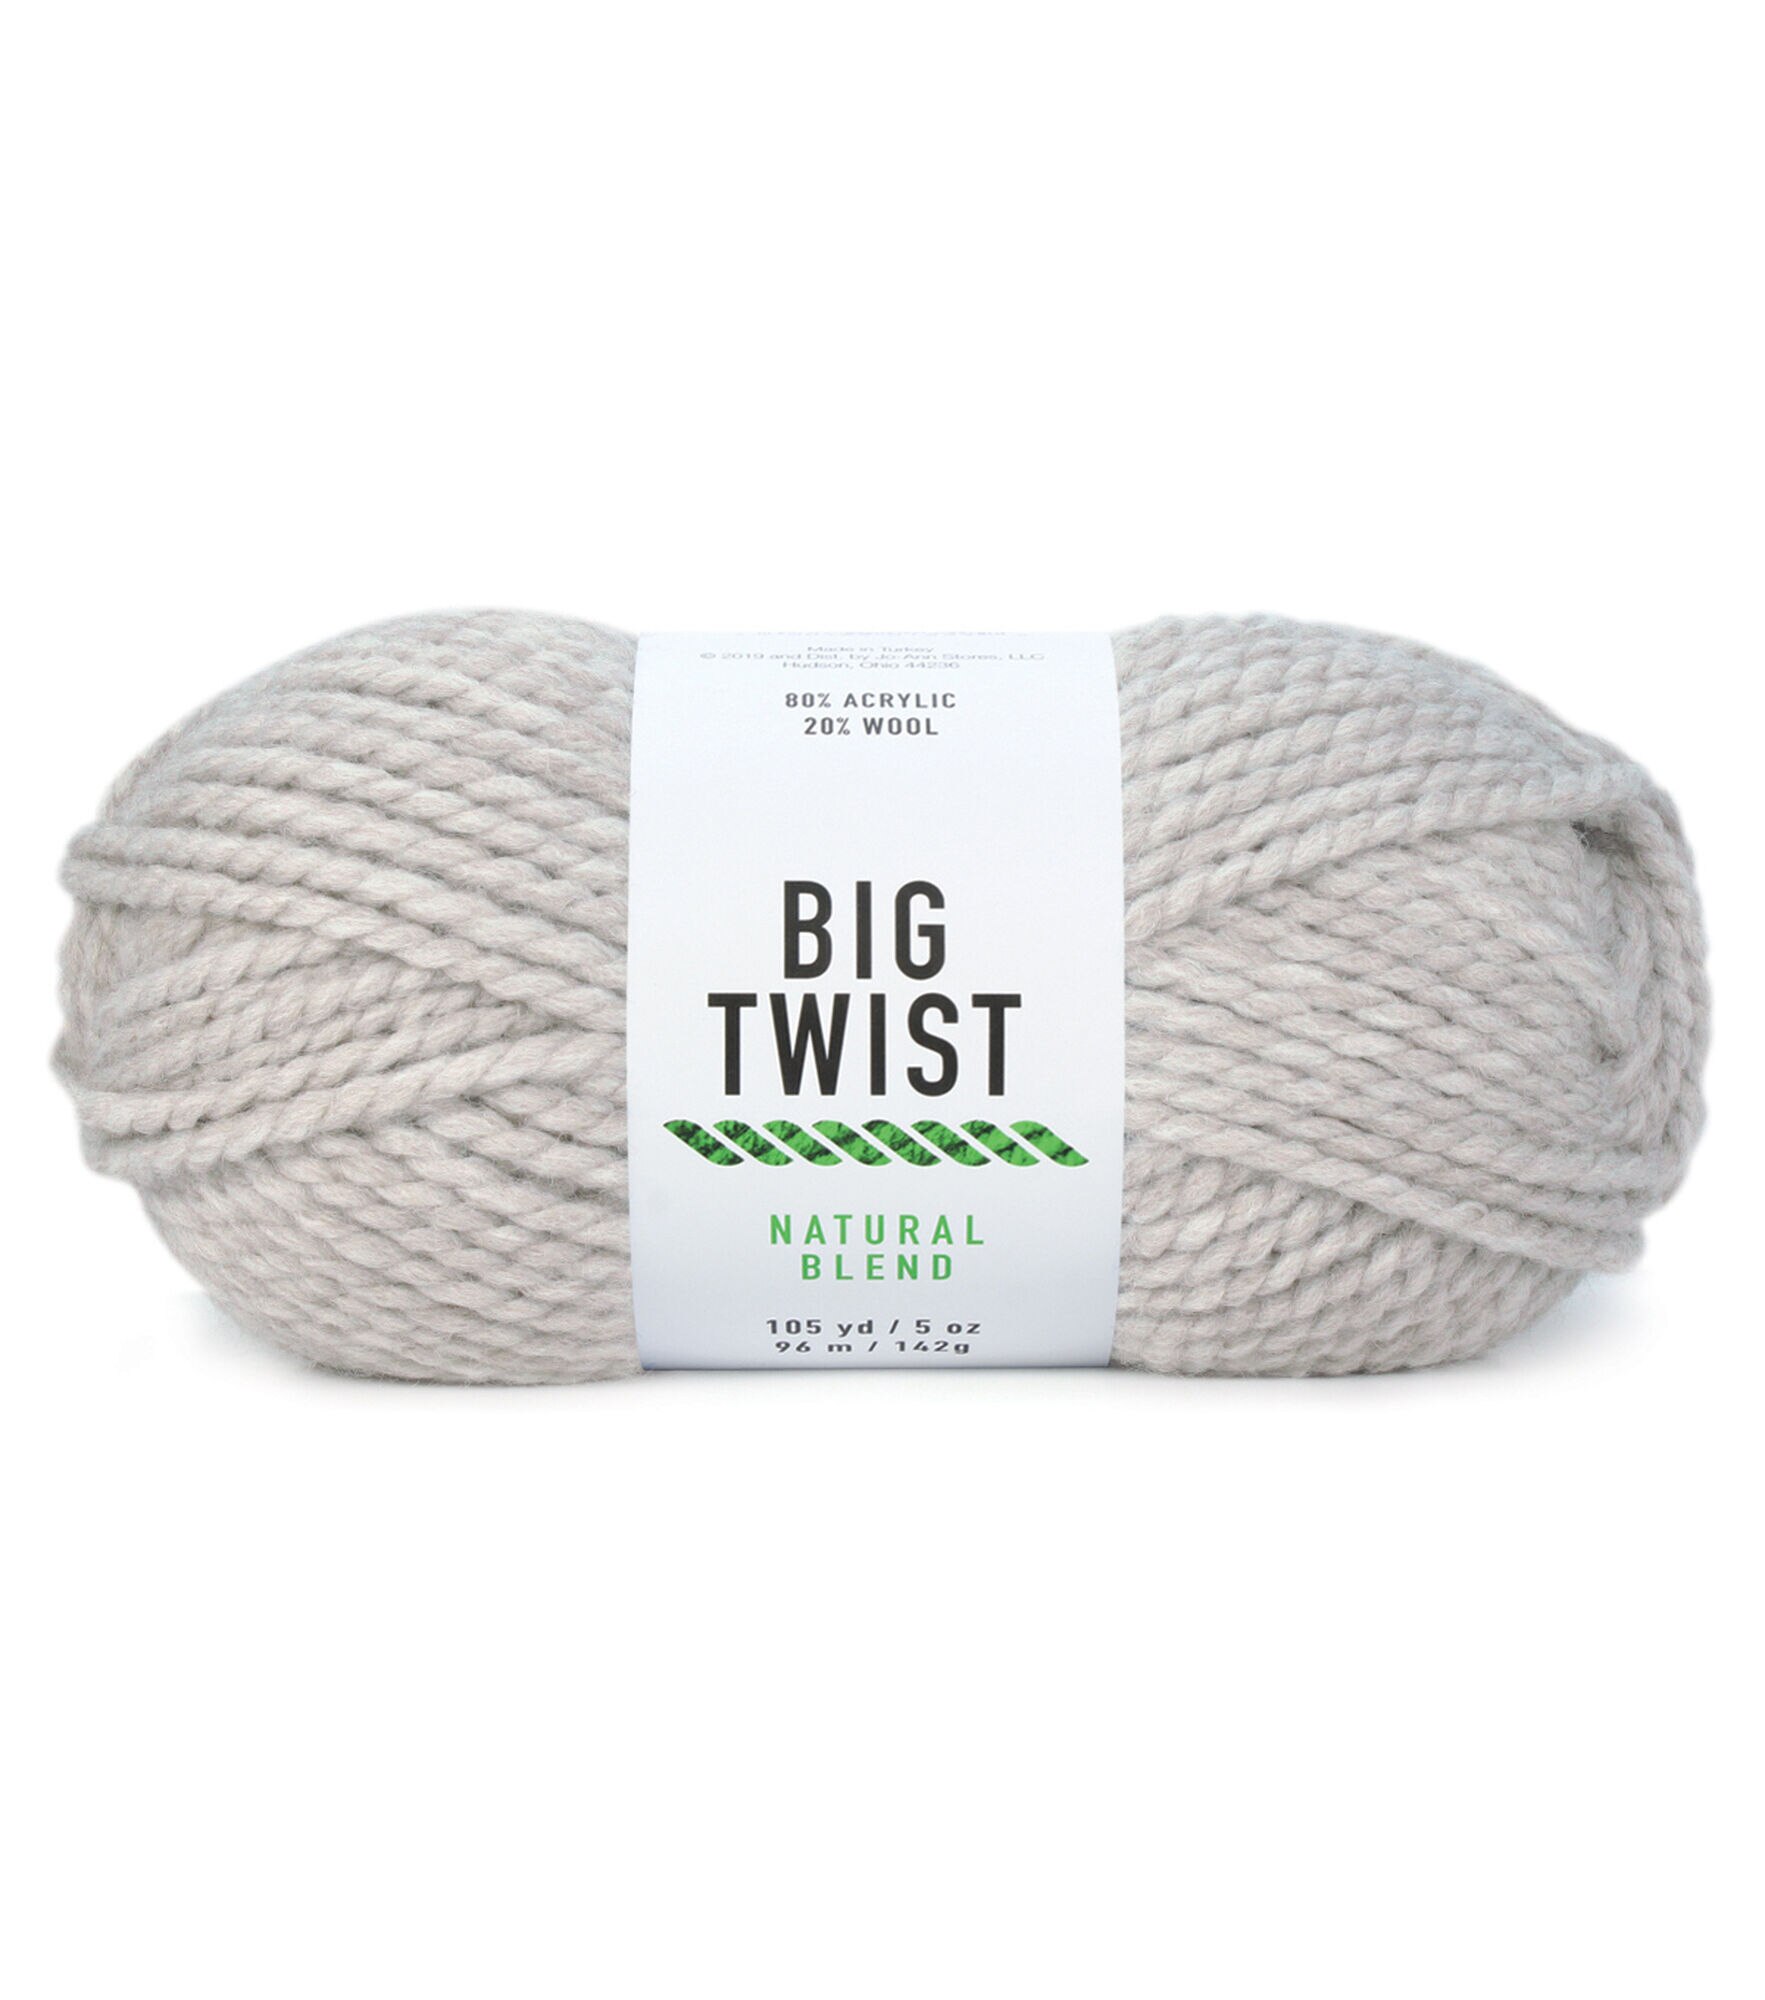 5oz Super Bulky Acrylic & Wool 105yd Natural Blend Yarn by Big Twist by Big  Twist